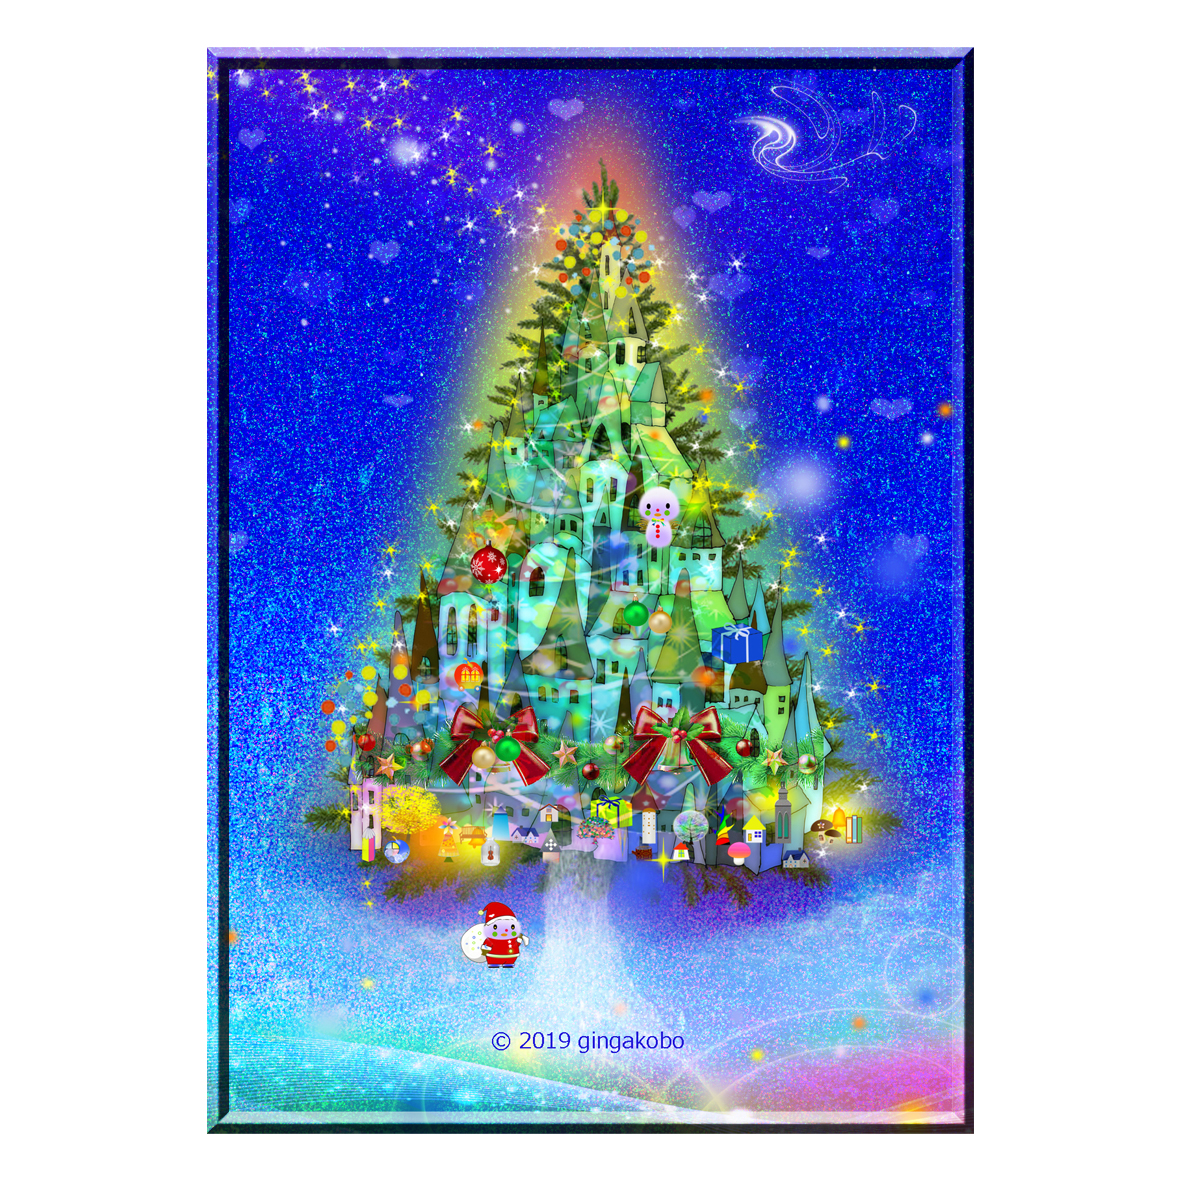 一年でいっちばん あったかい日にしたいクリスマス ほっこり癒しのイラストa4サイズポスターno 706 Iichi ハンドメイド クラフト作品 手仕事品の通販